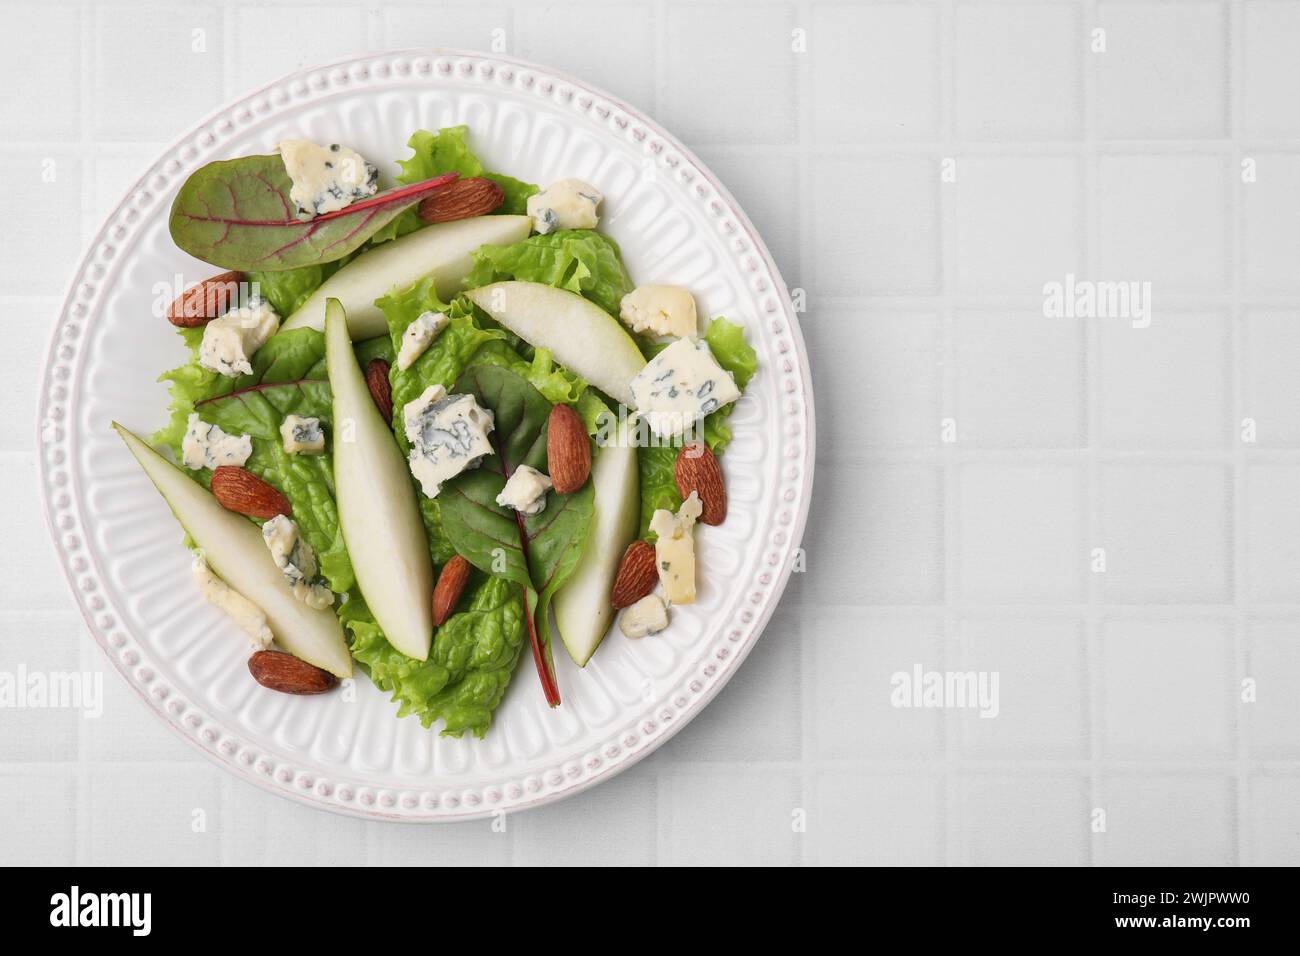 Délicieuse salade de poires sur table carrelée blanche, vue de dessus. Espace pour le texte Banque D'Images